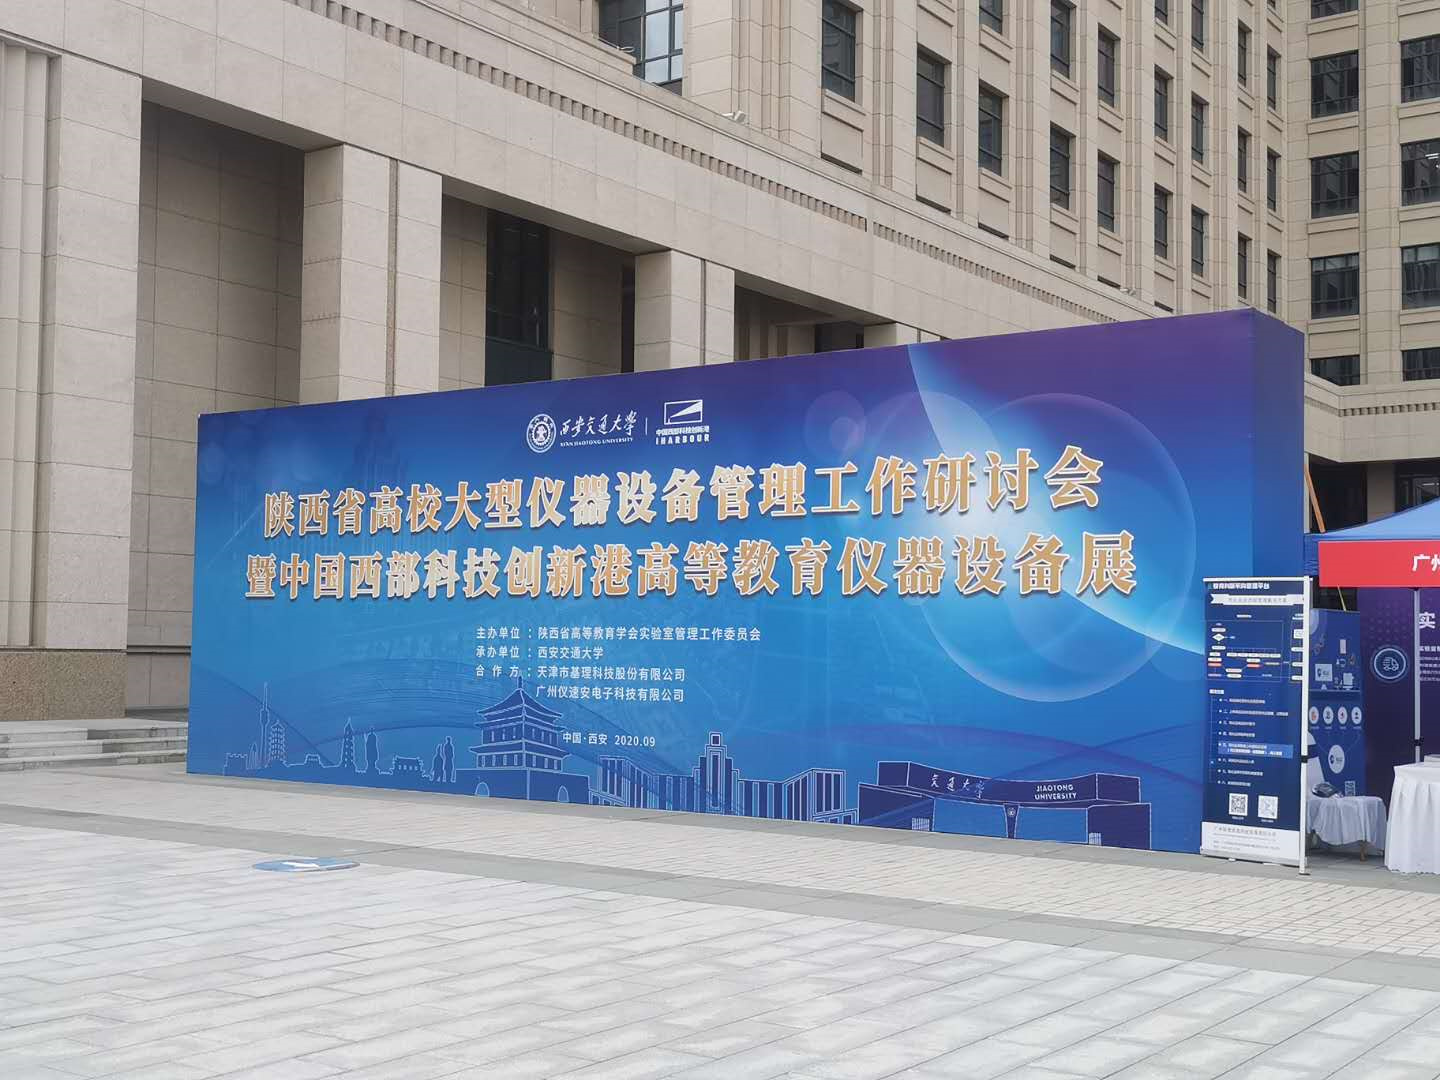 陕西省高校大型仪器设备开放共享研讨会-交大创新港